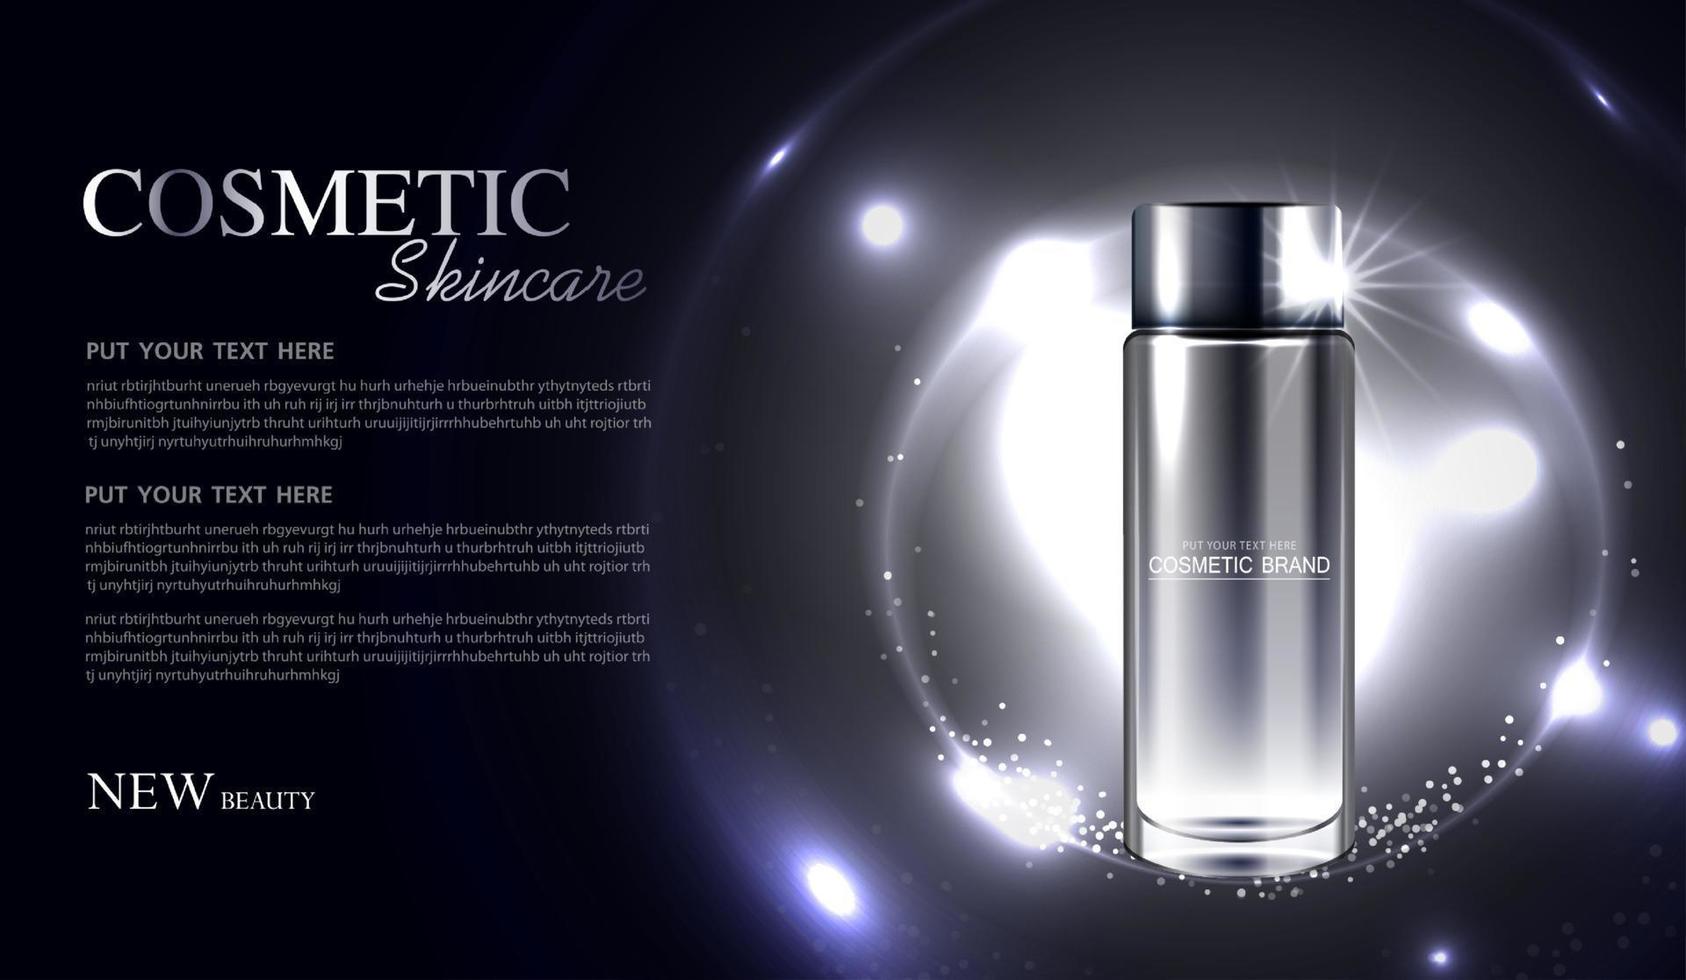 cosmetica of huidverzorgingsproduct advertenties met fles, banneradvertentie voor schoonheidsproducten glinsterende lichteffect achtergrond. vector ontwerp